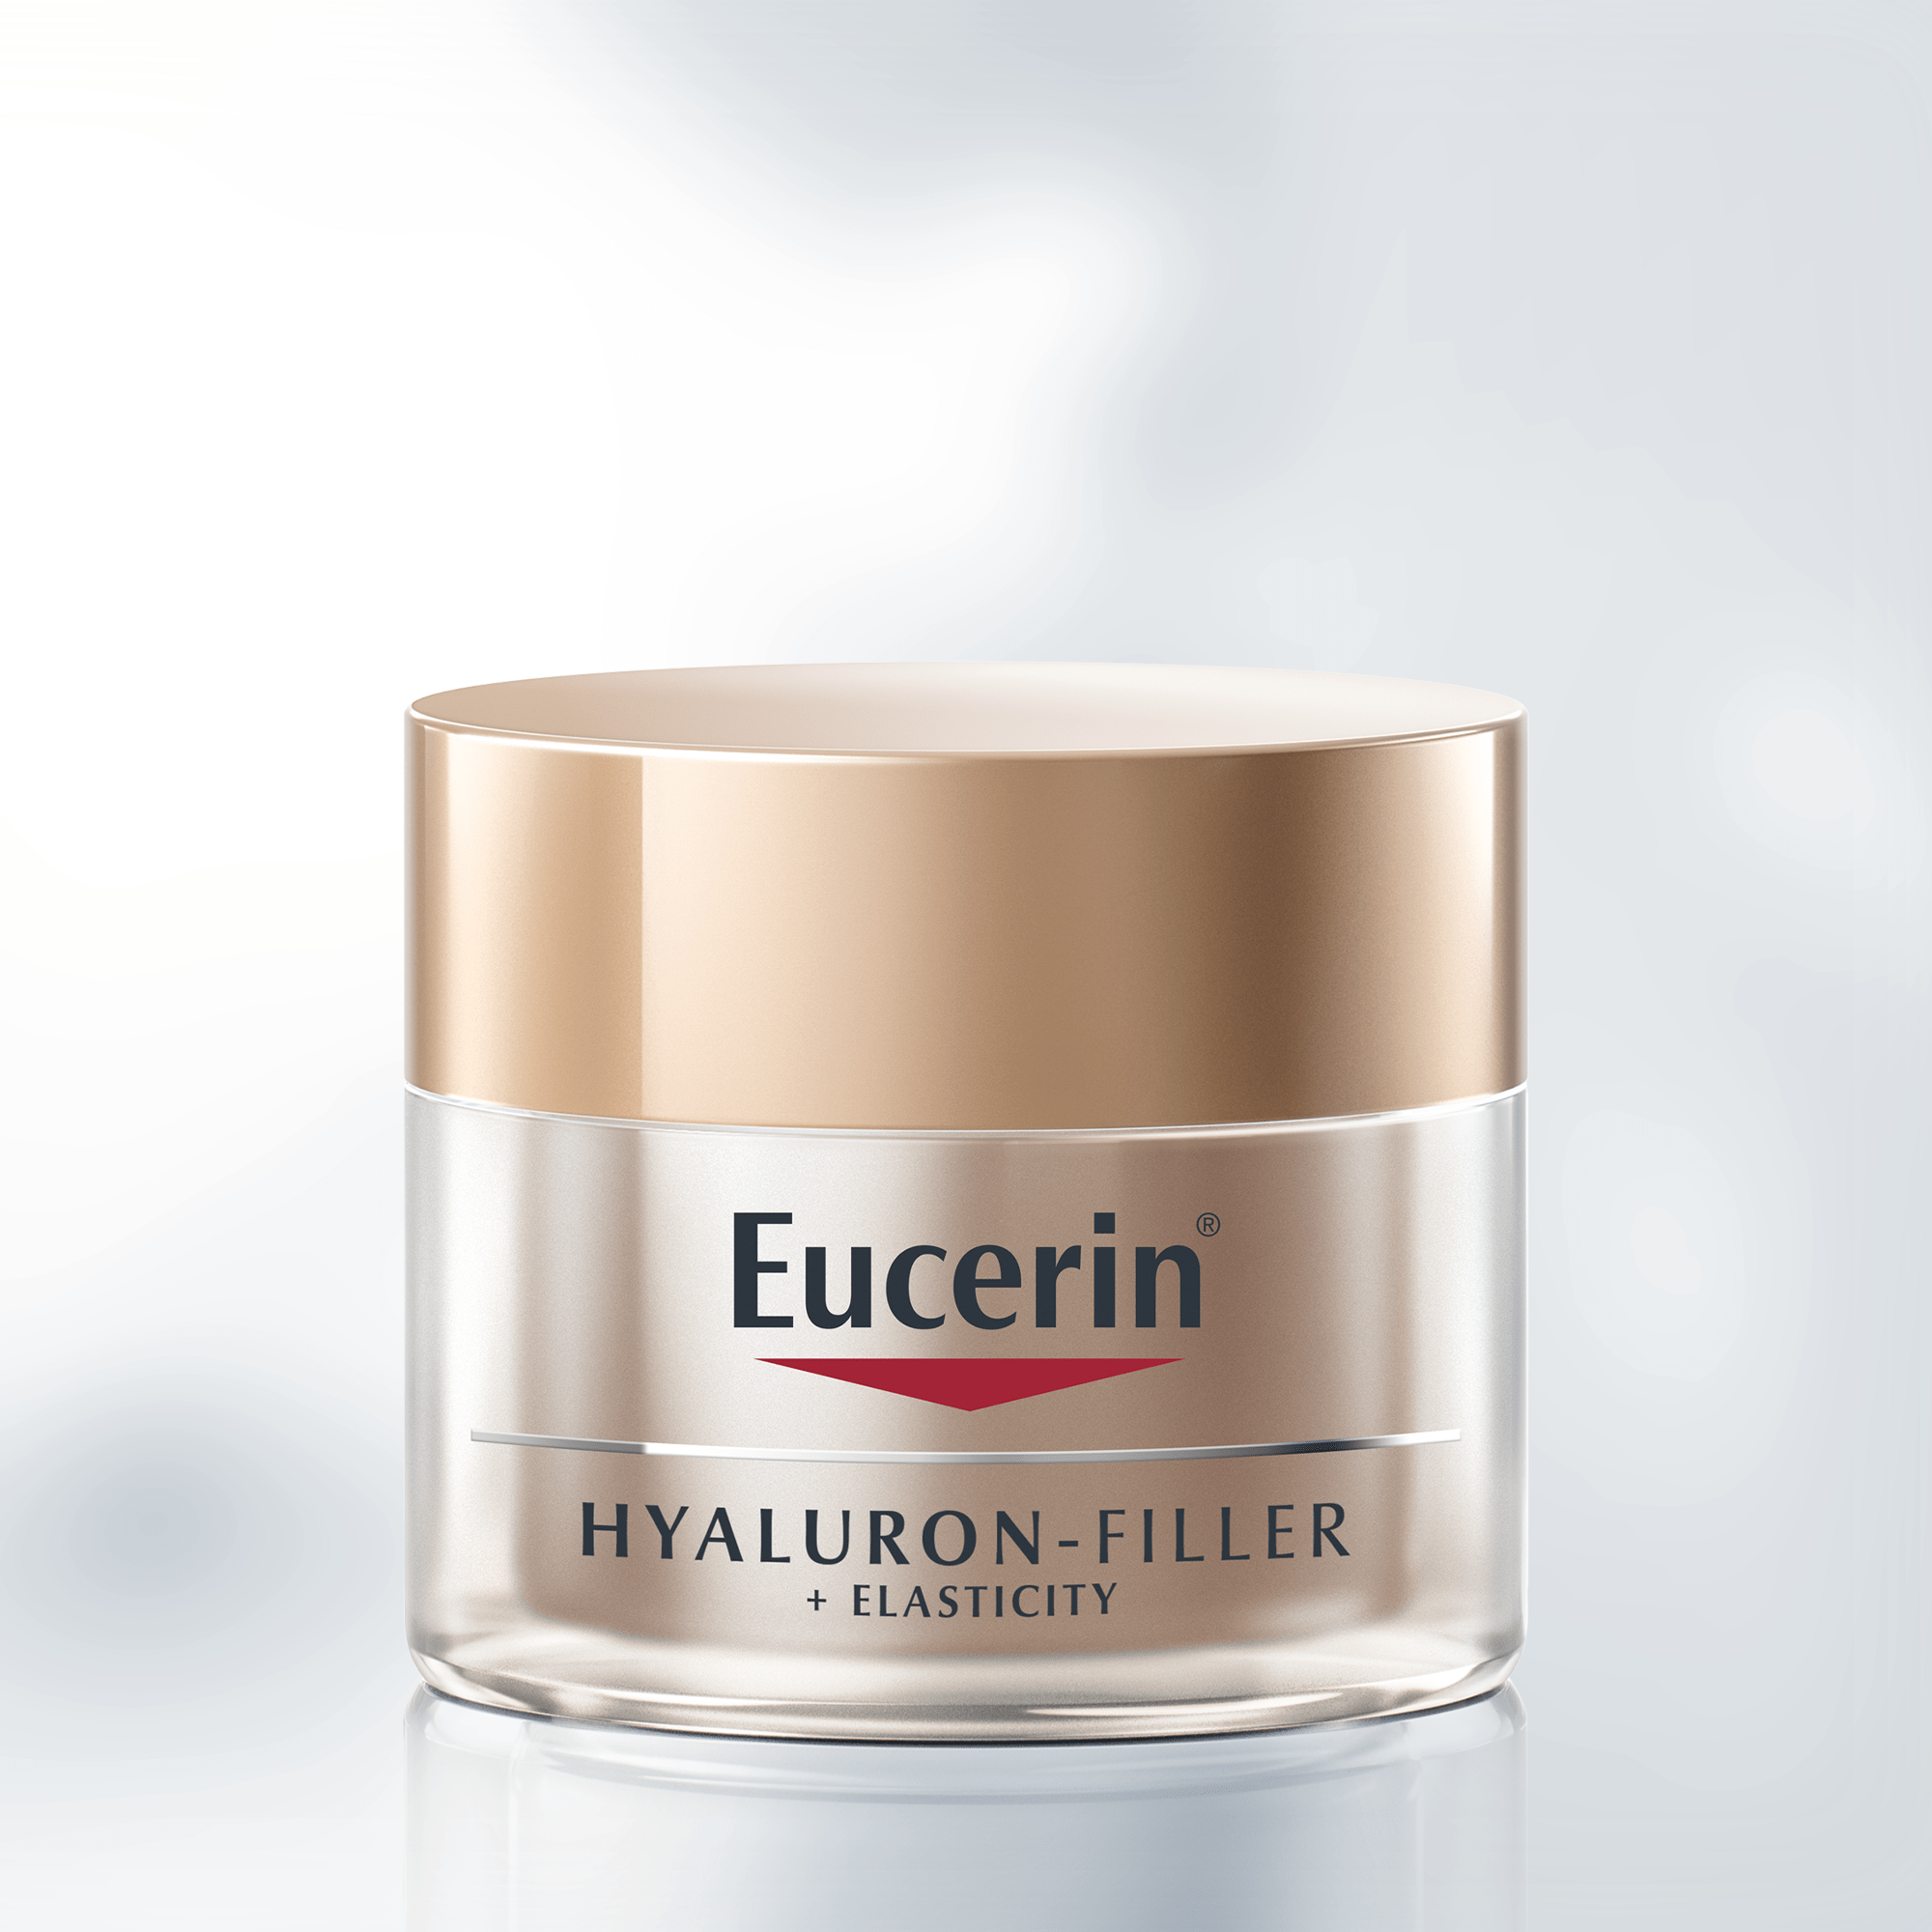 Eucerin Hyaluron Filler + elasticity Cuidado de Noche